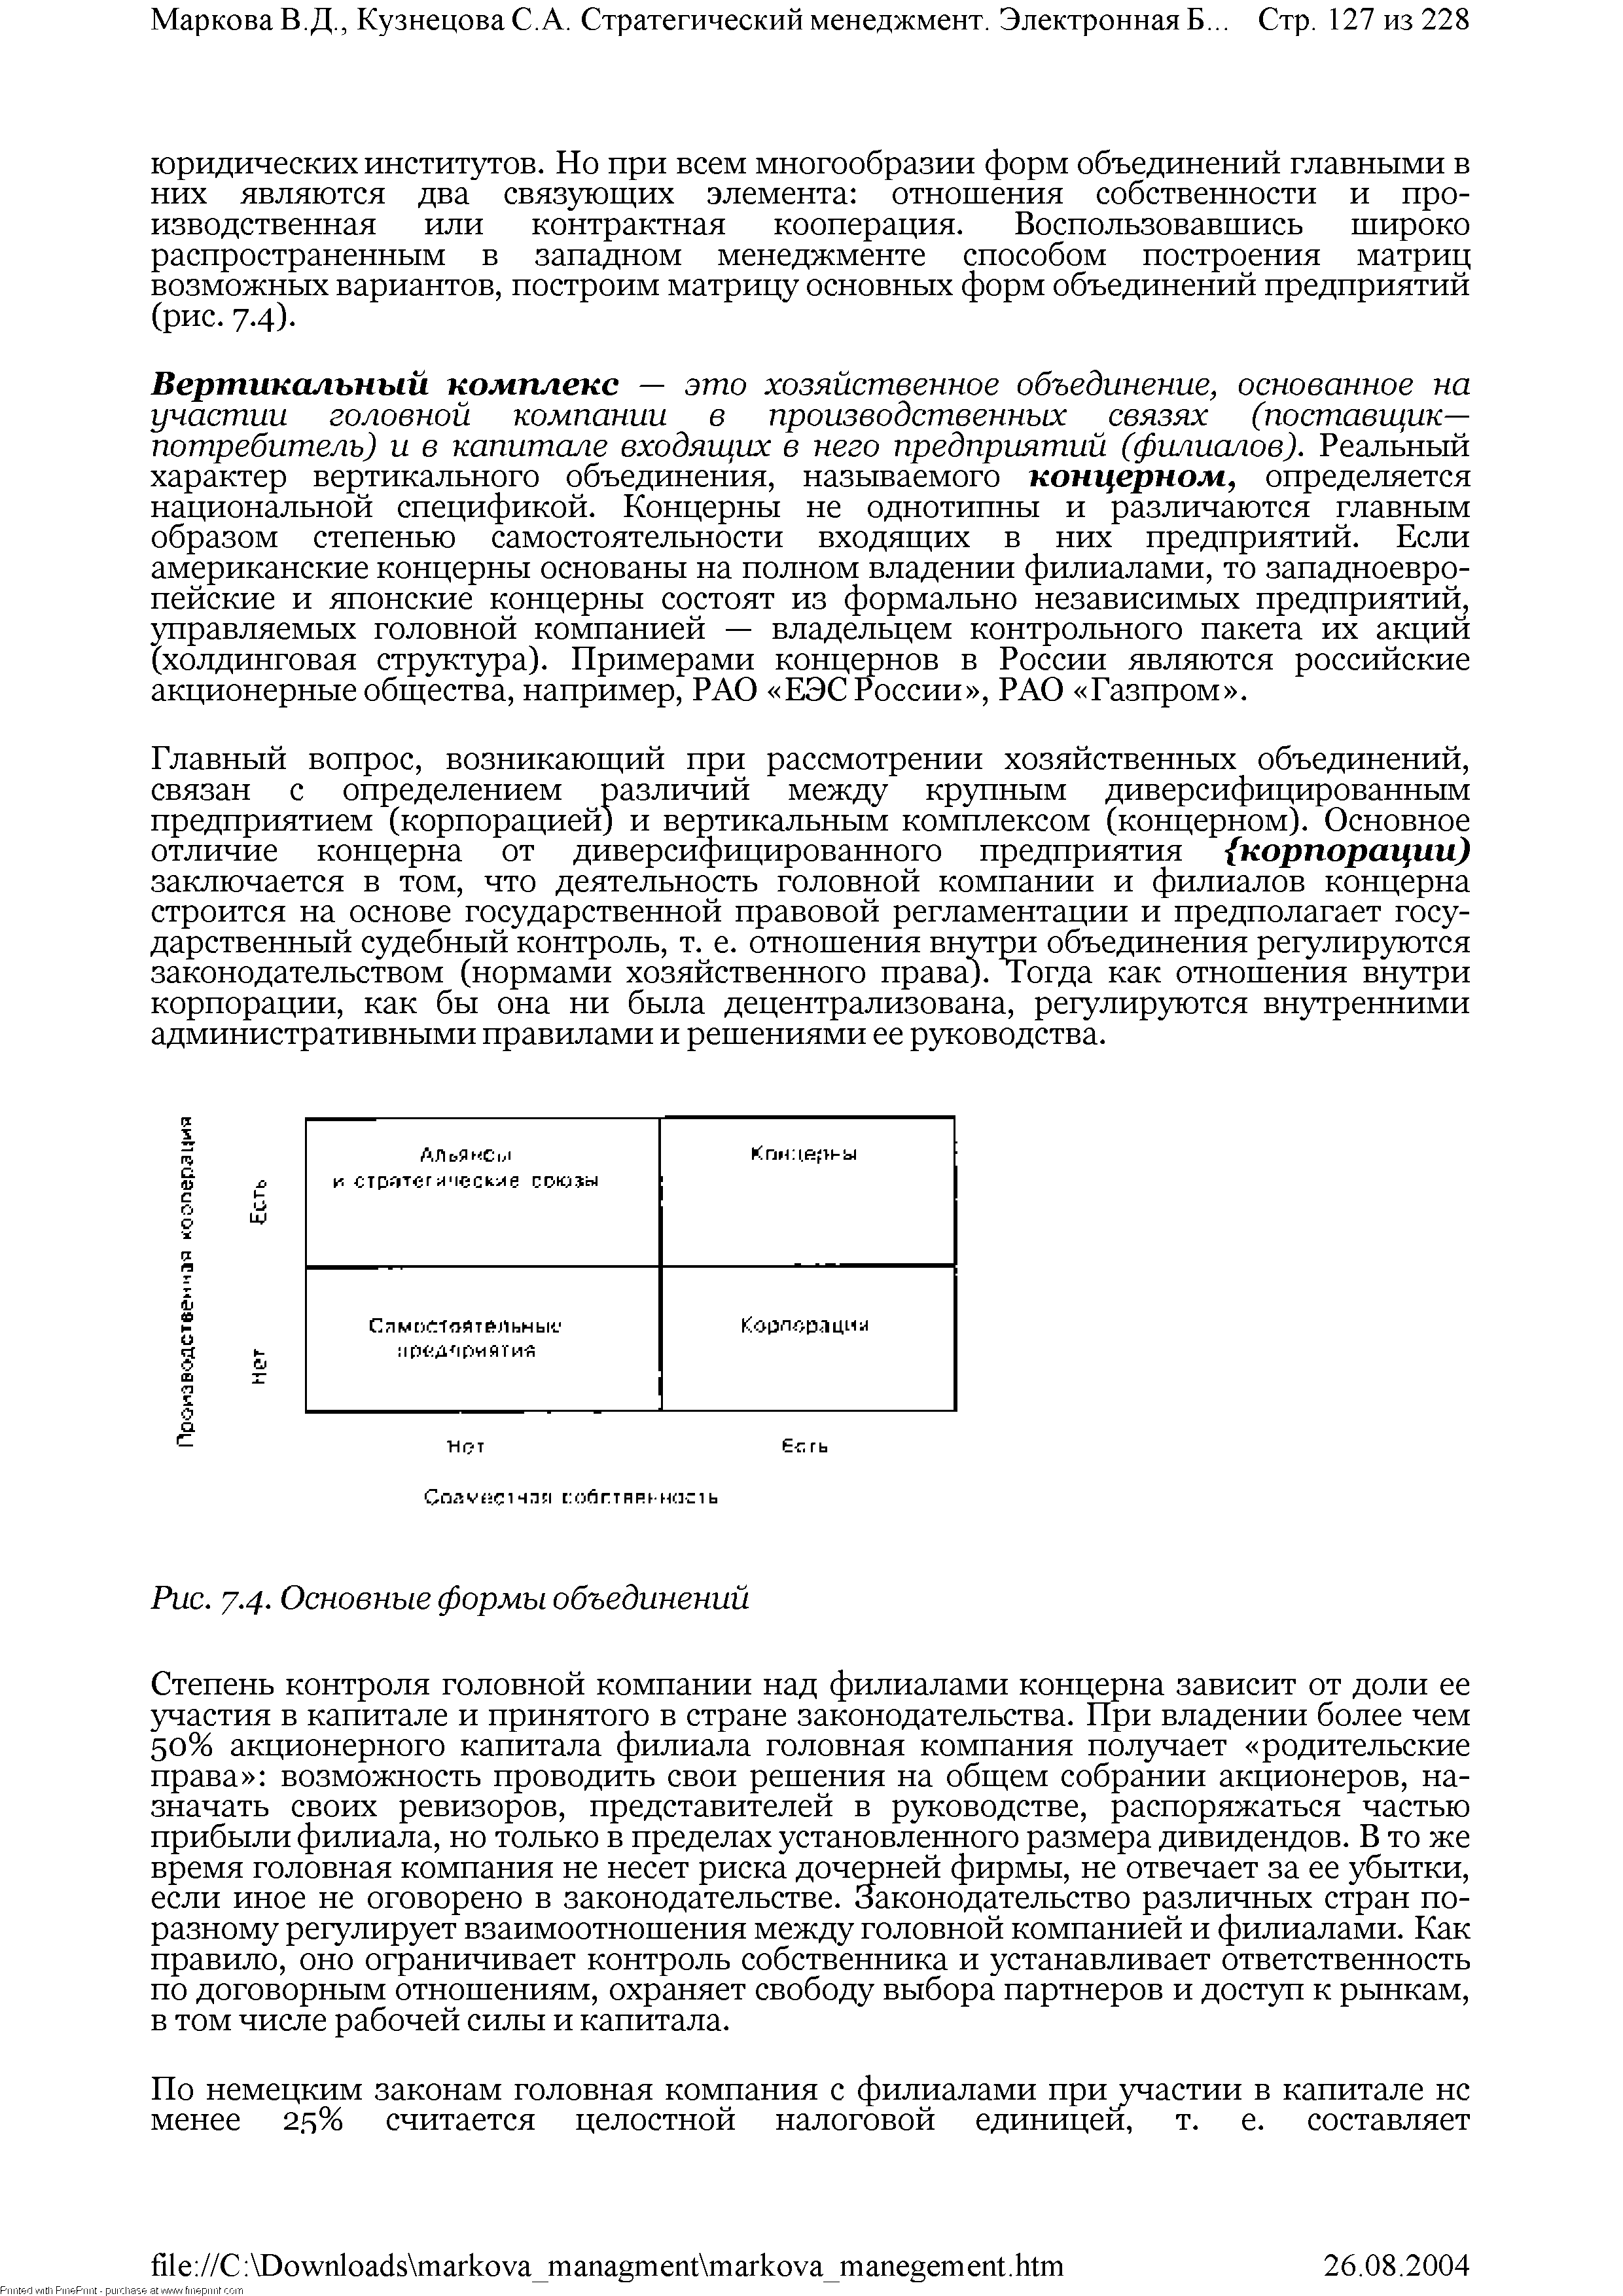 Рис. 7-4- Основные формы объединений
